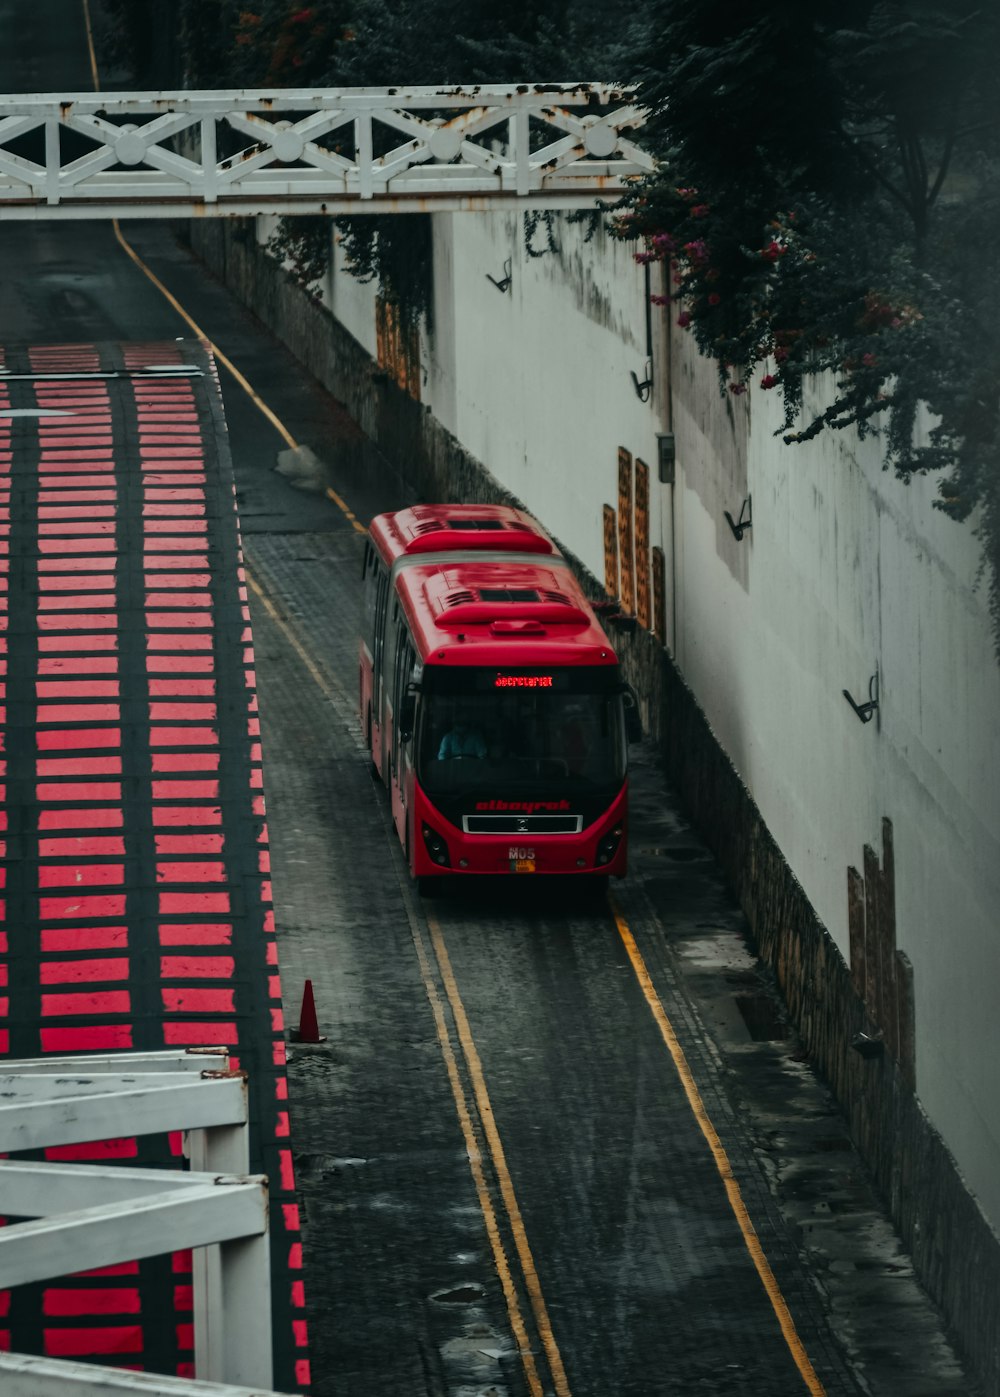 昼間の路上を走る赤と黒のバス